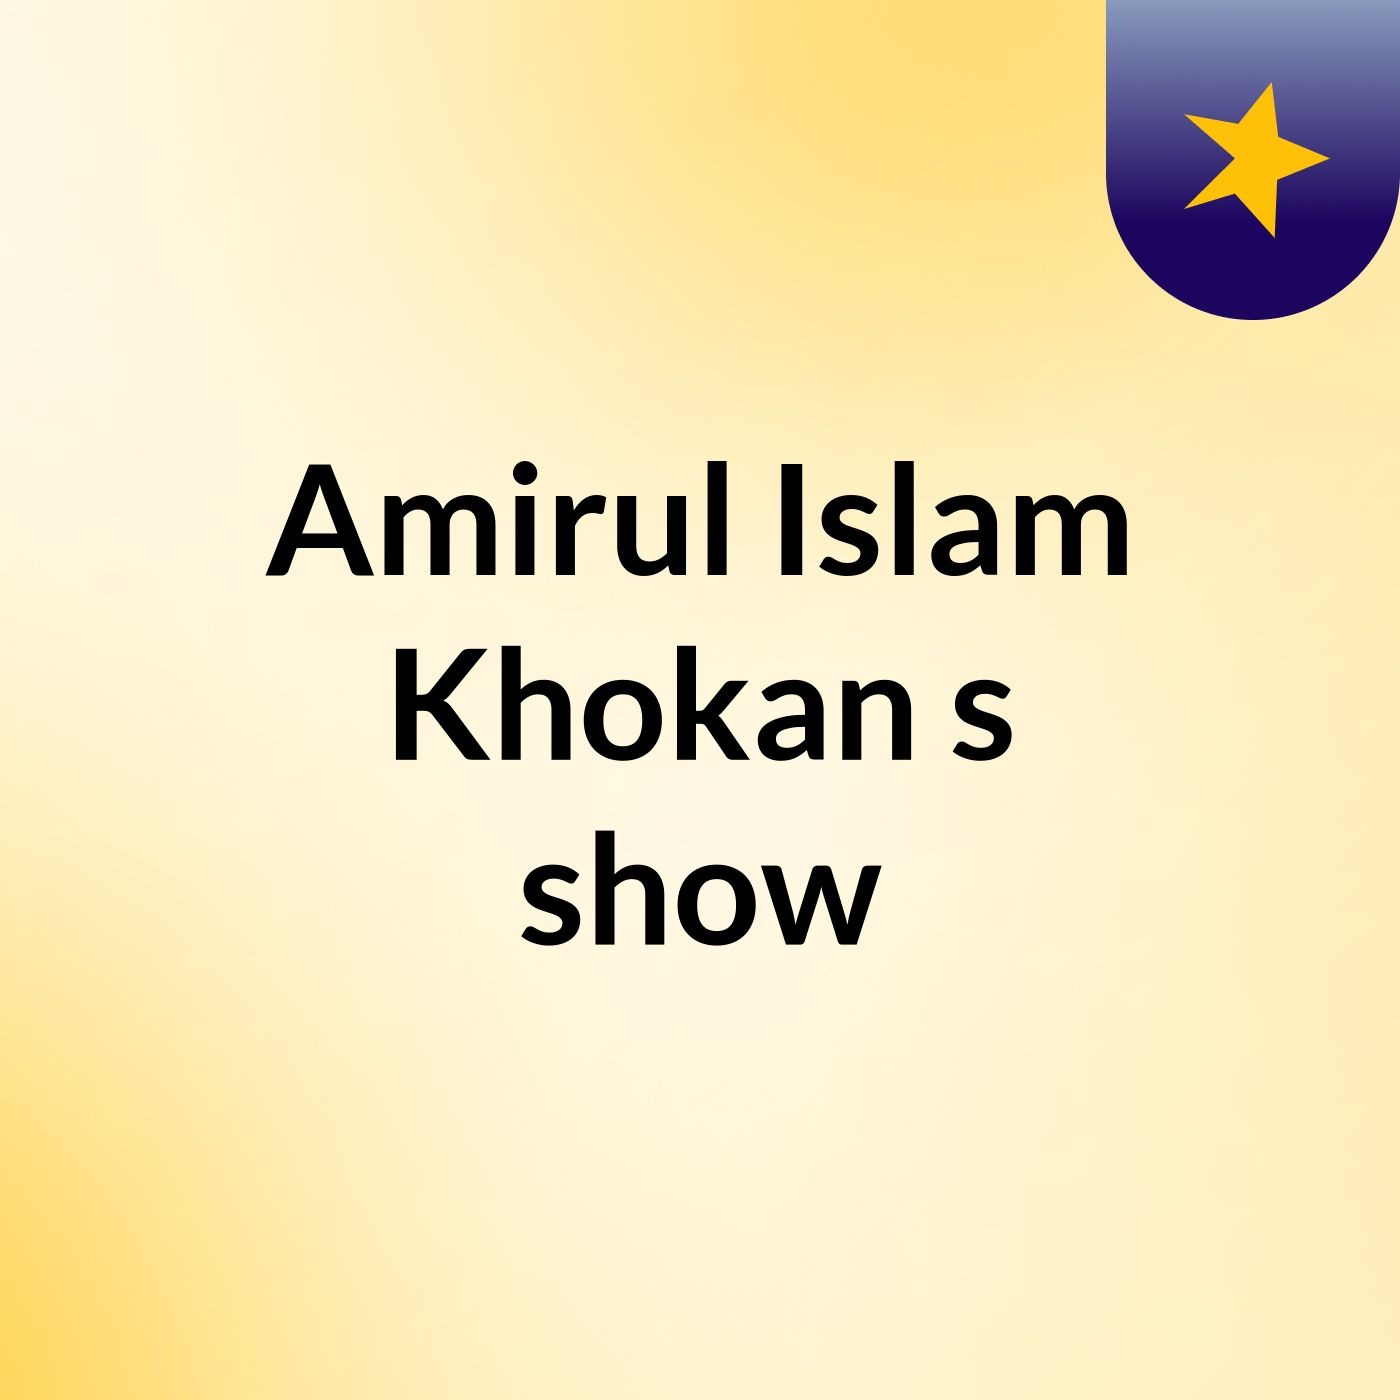 Amirul Islam Khokan's show